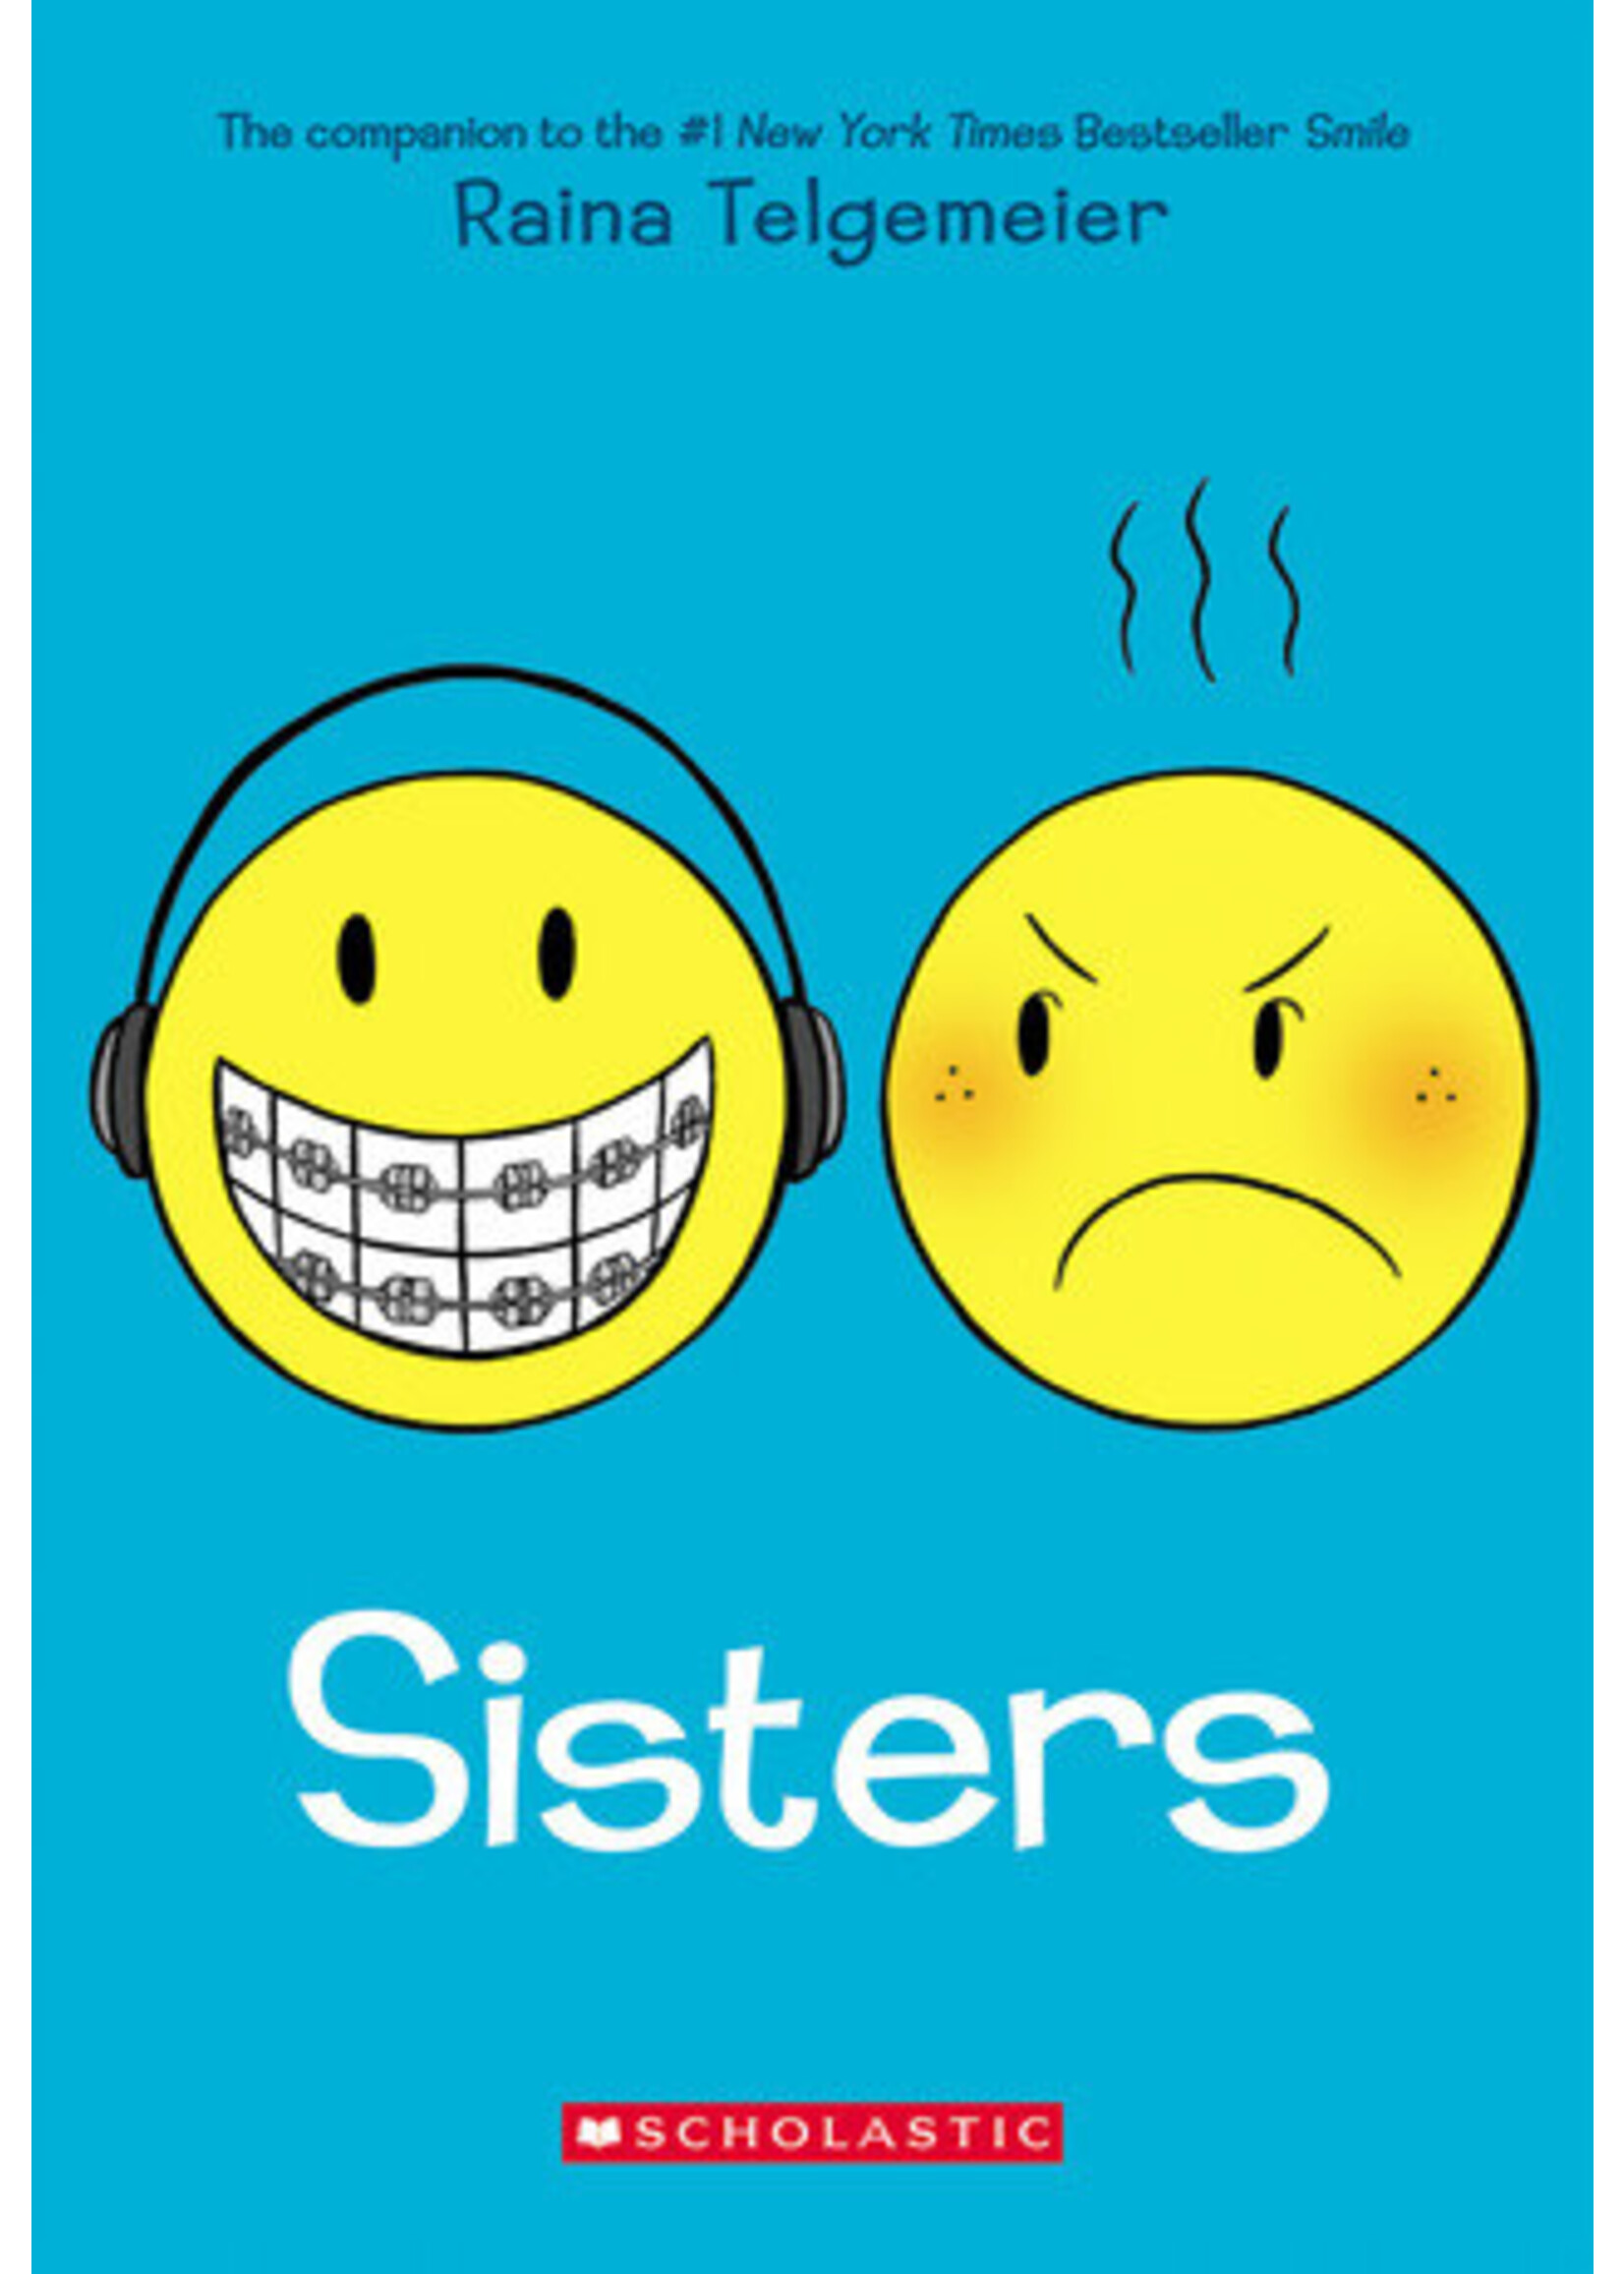 Sisters (Smile #2) by Raina Telgemeier